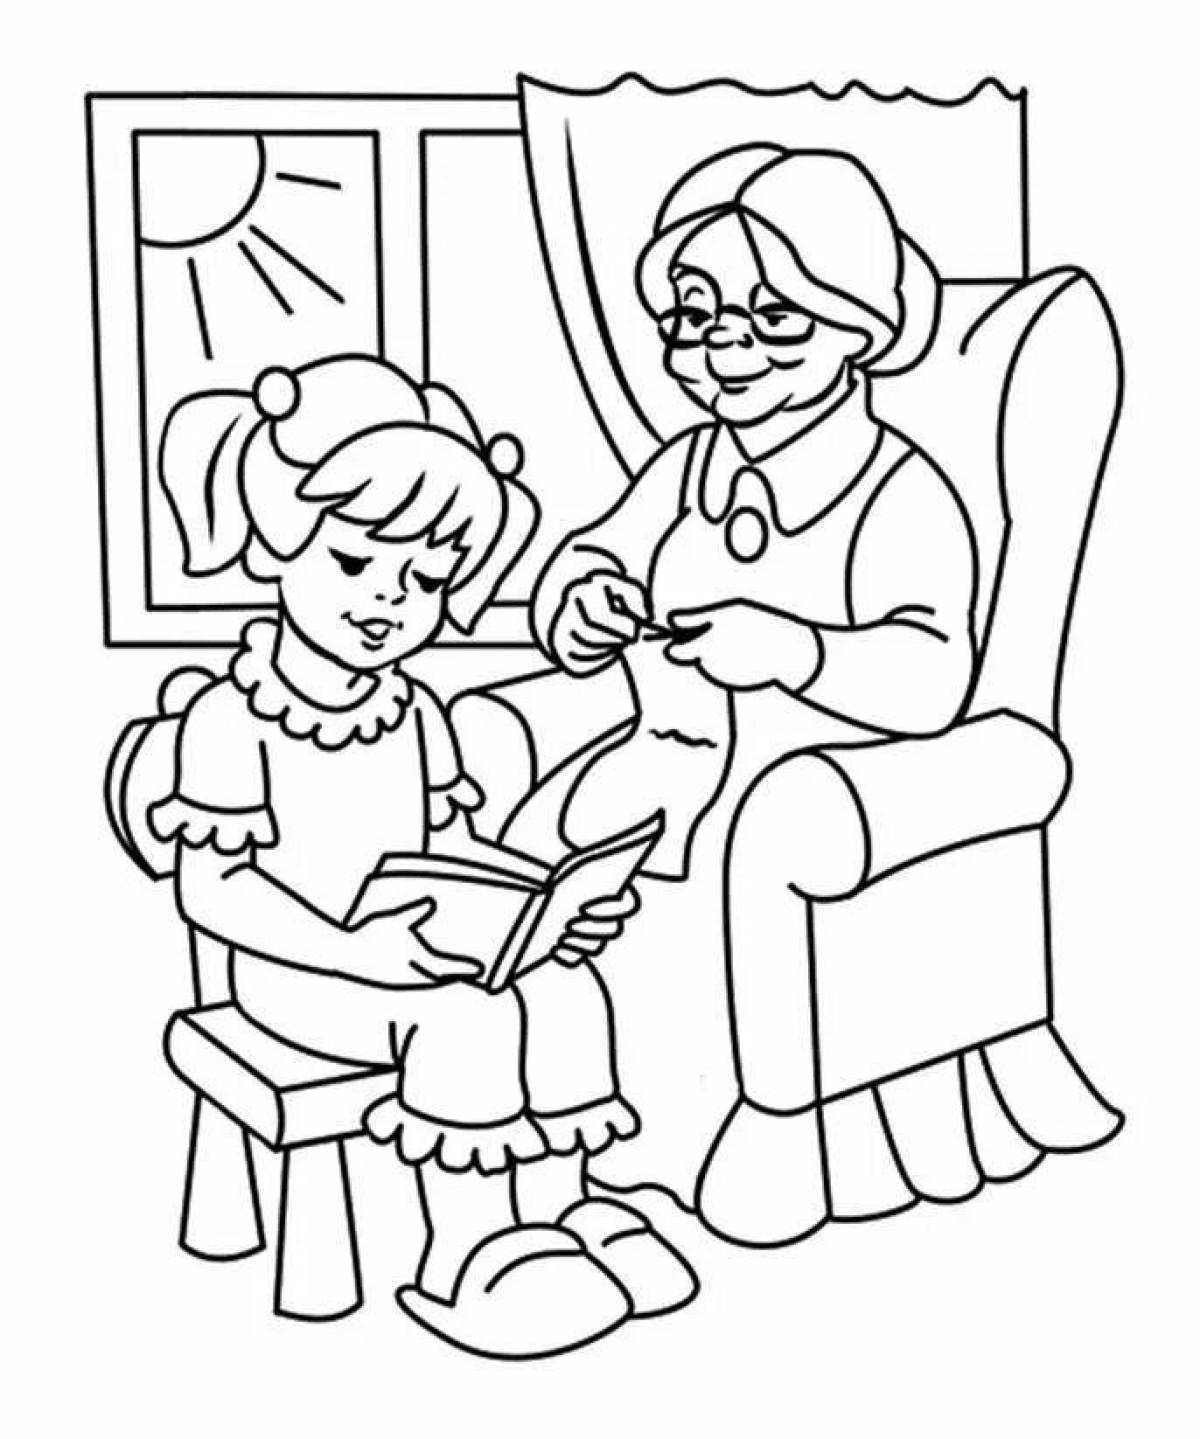 Amazing grandma and granddaughter coloring book